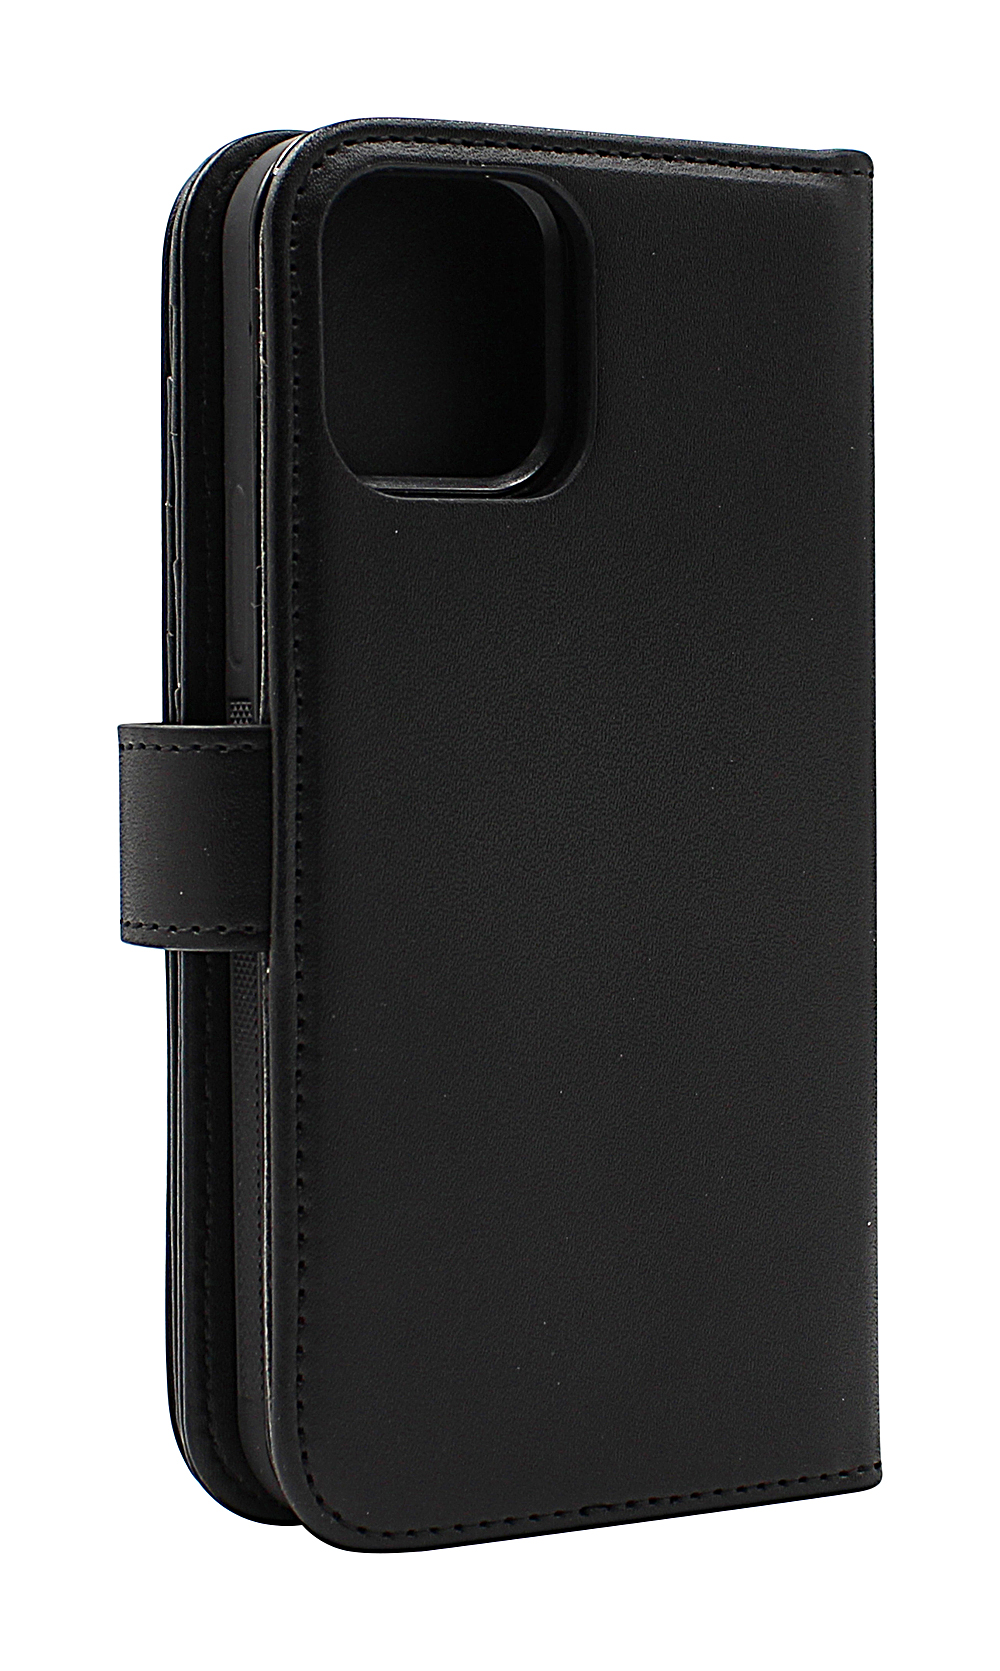 Skimblocker XL Magnet Wallet iPhone 13 (6.1)